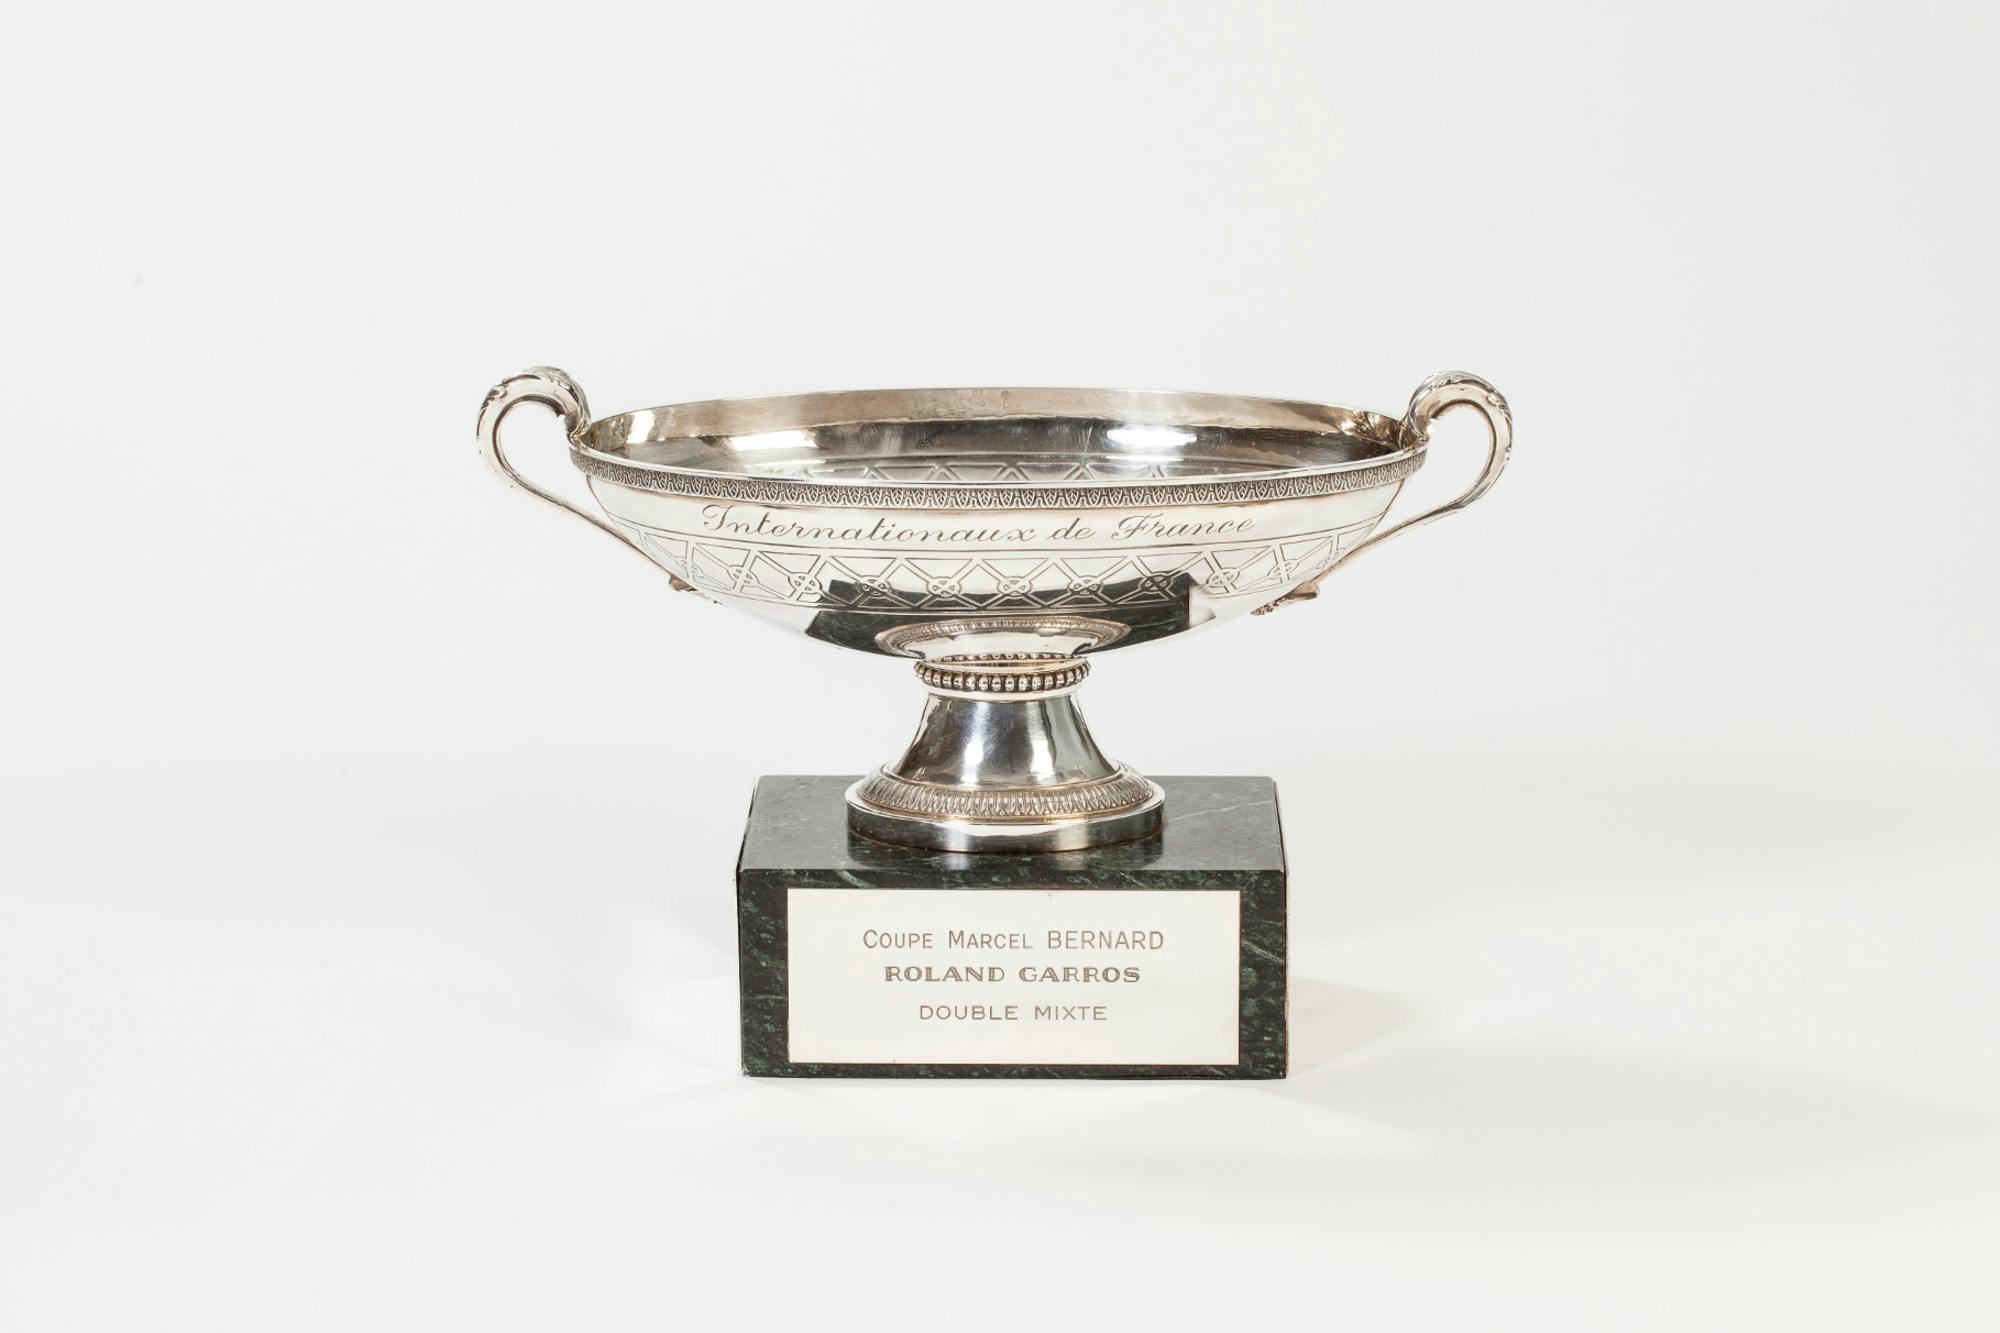 Roland Garros Trophy Suzanne Lenglen Cup | 3D model